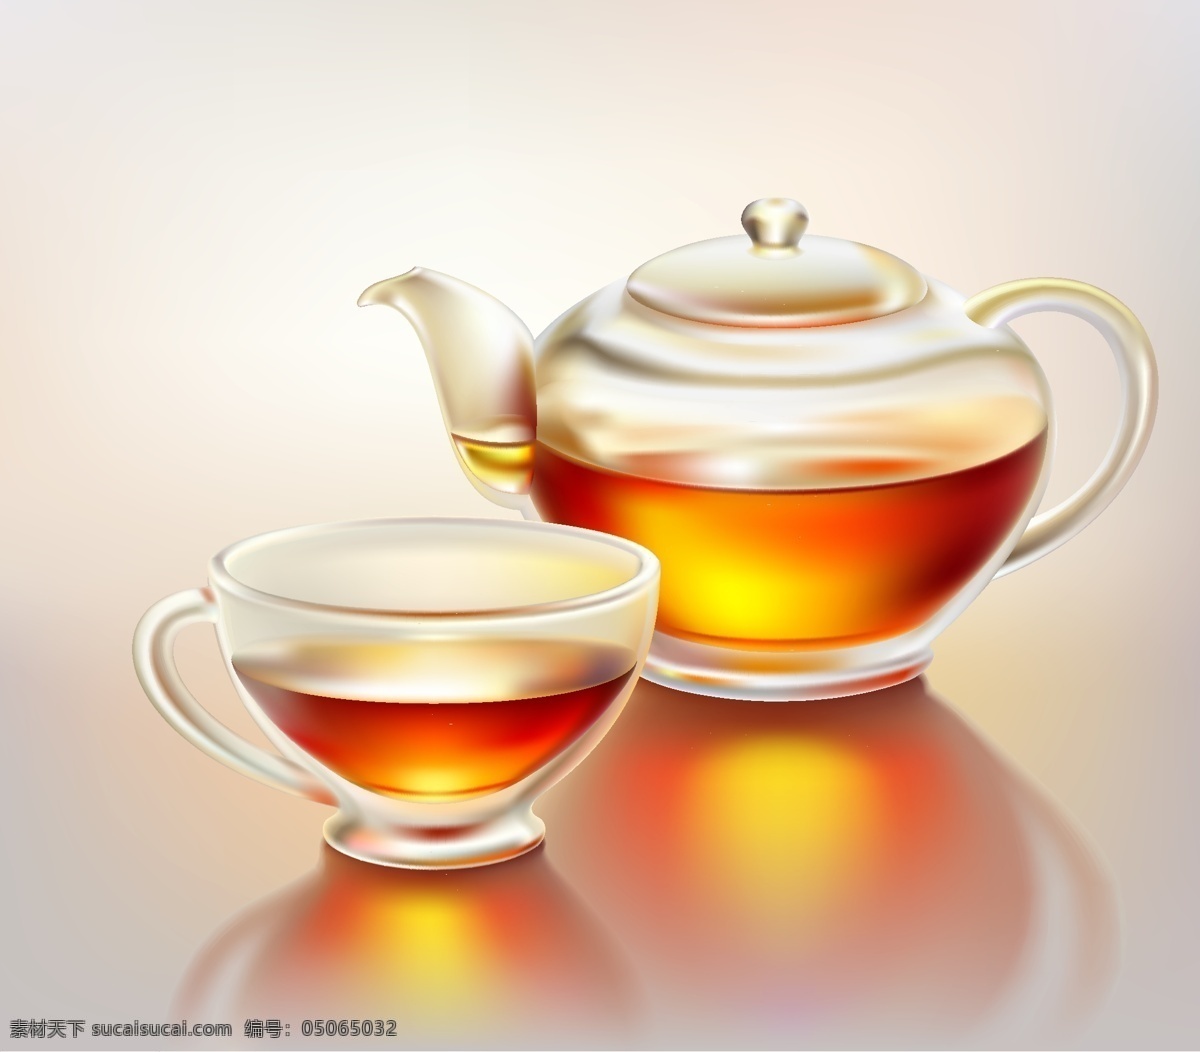 精致 茶壶 茶杯 矢量 杯 玻璃 材料 茶叶 透明 细腻 现实 擦洗 向量的茶壶 向量 矢量图 日常生活